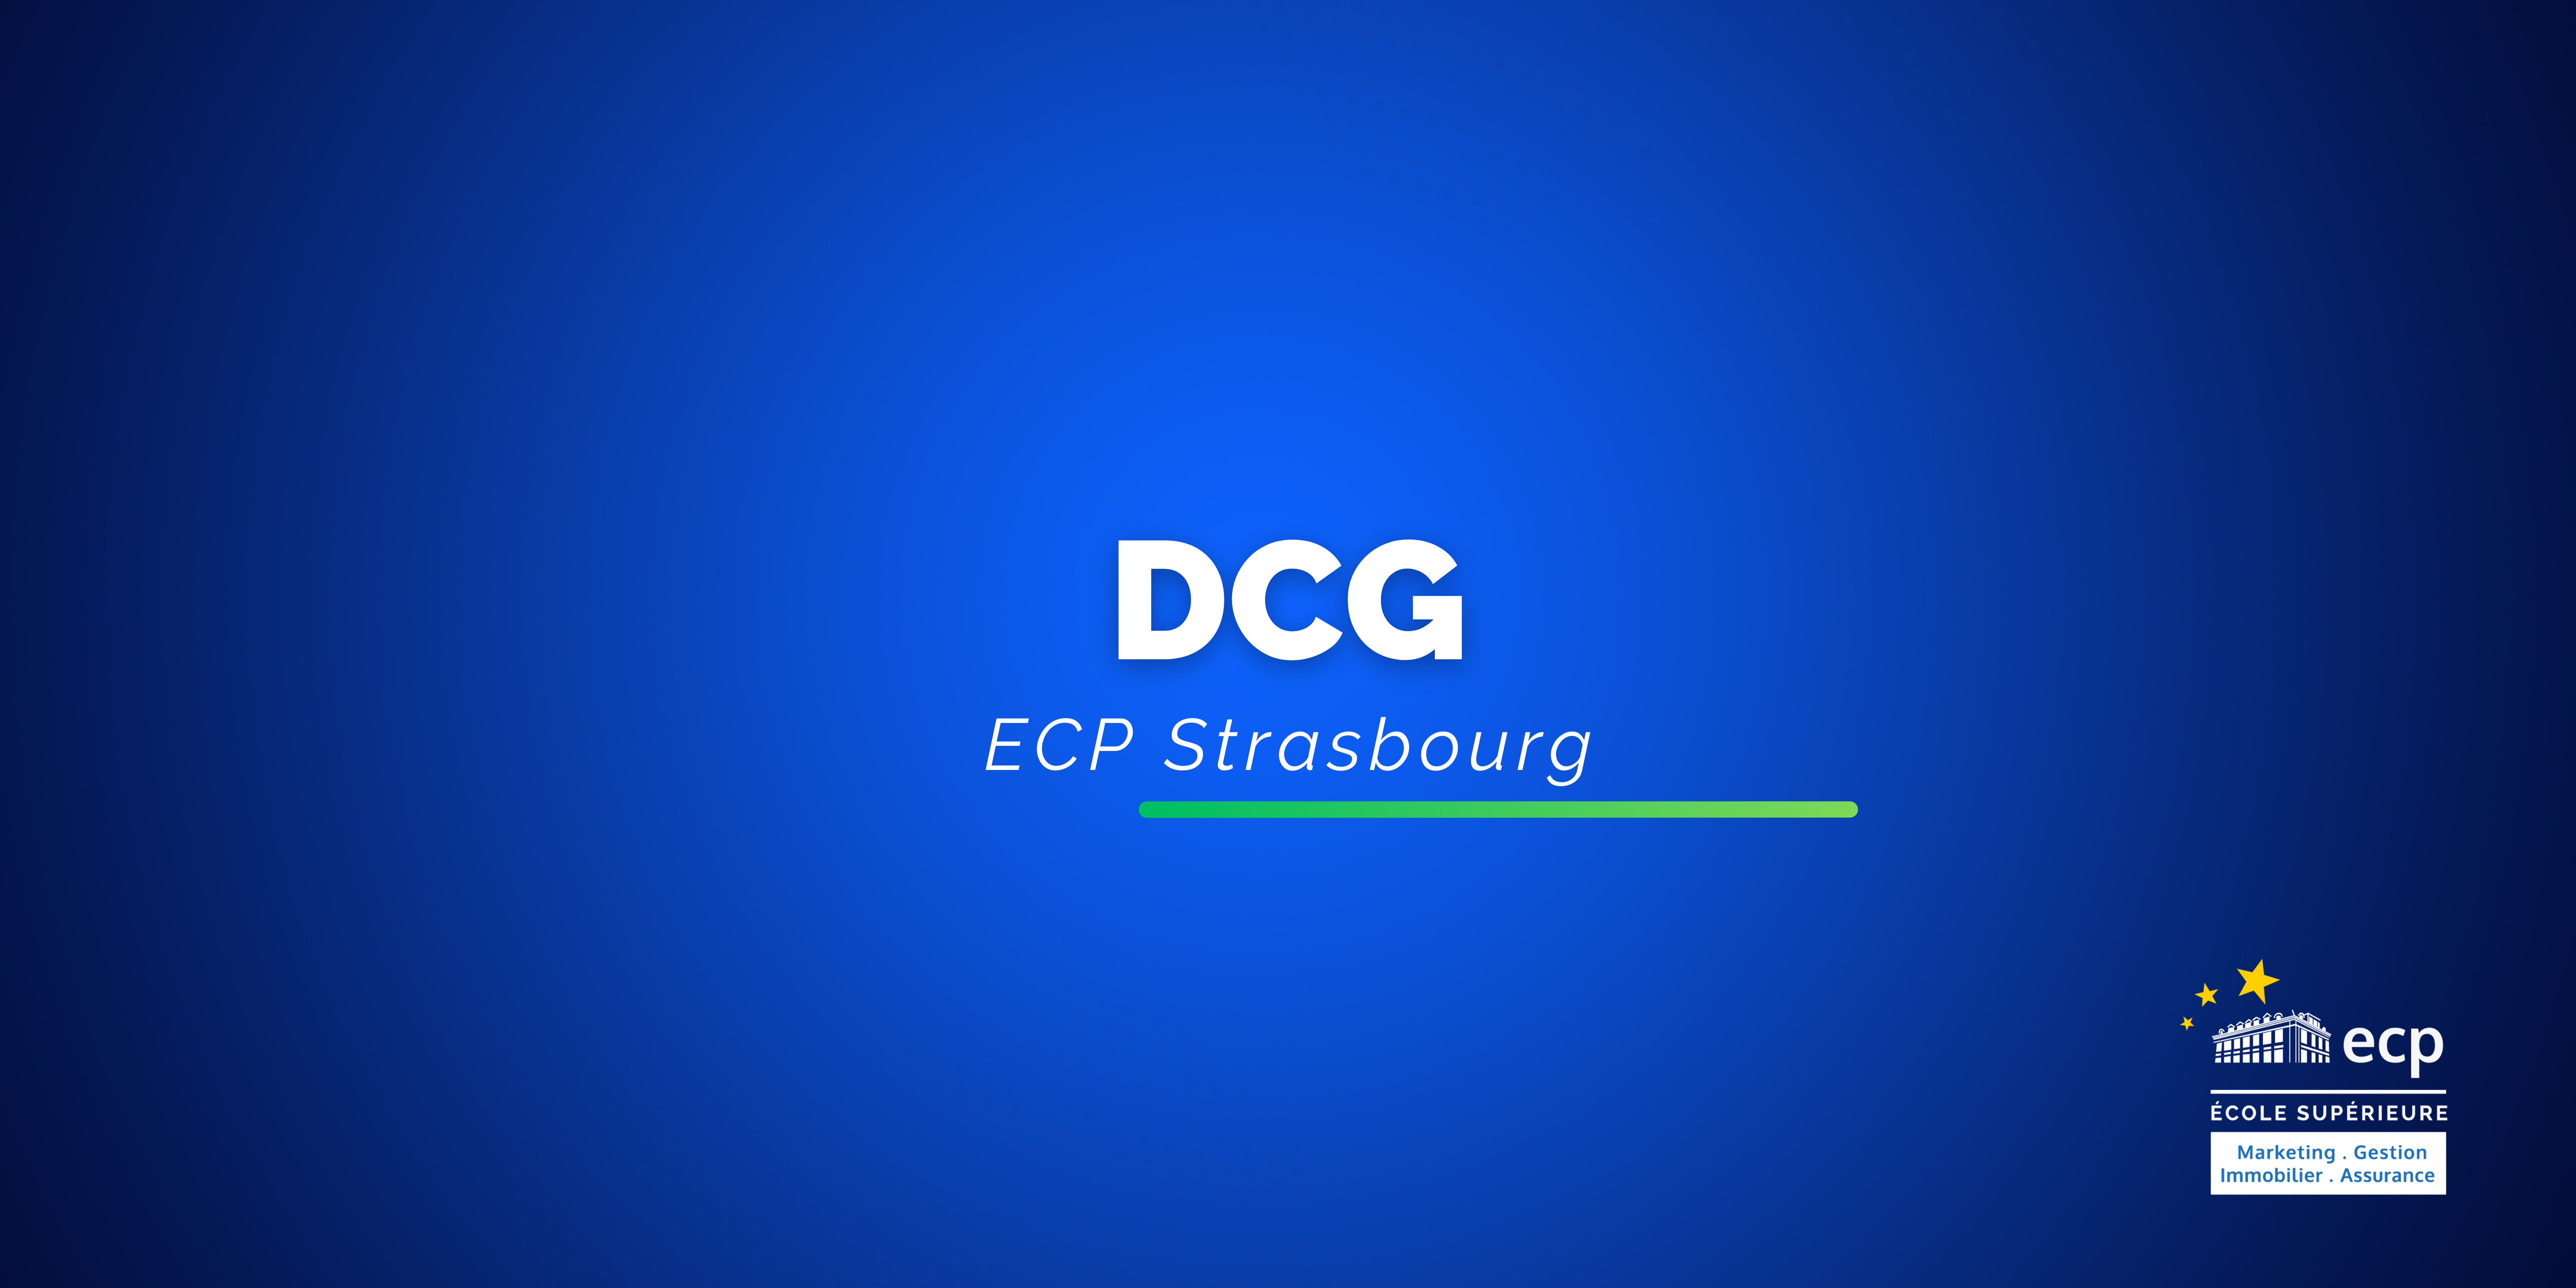 DCG (Diplôme de Comptabilité et de Gestion) Strasbourg